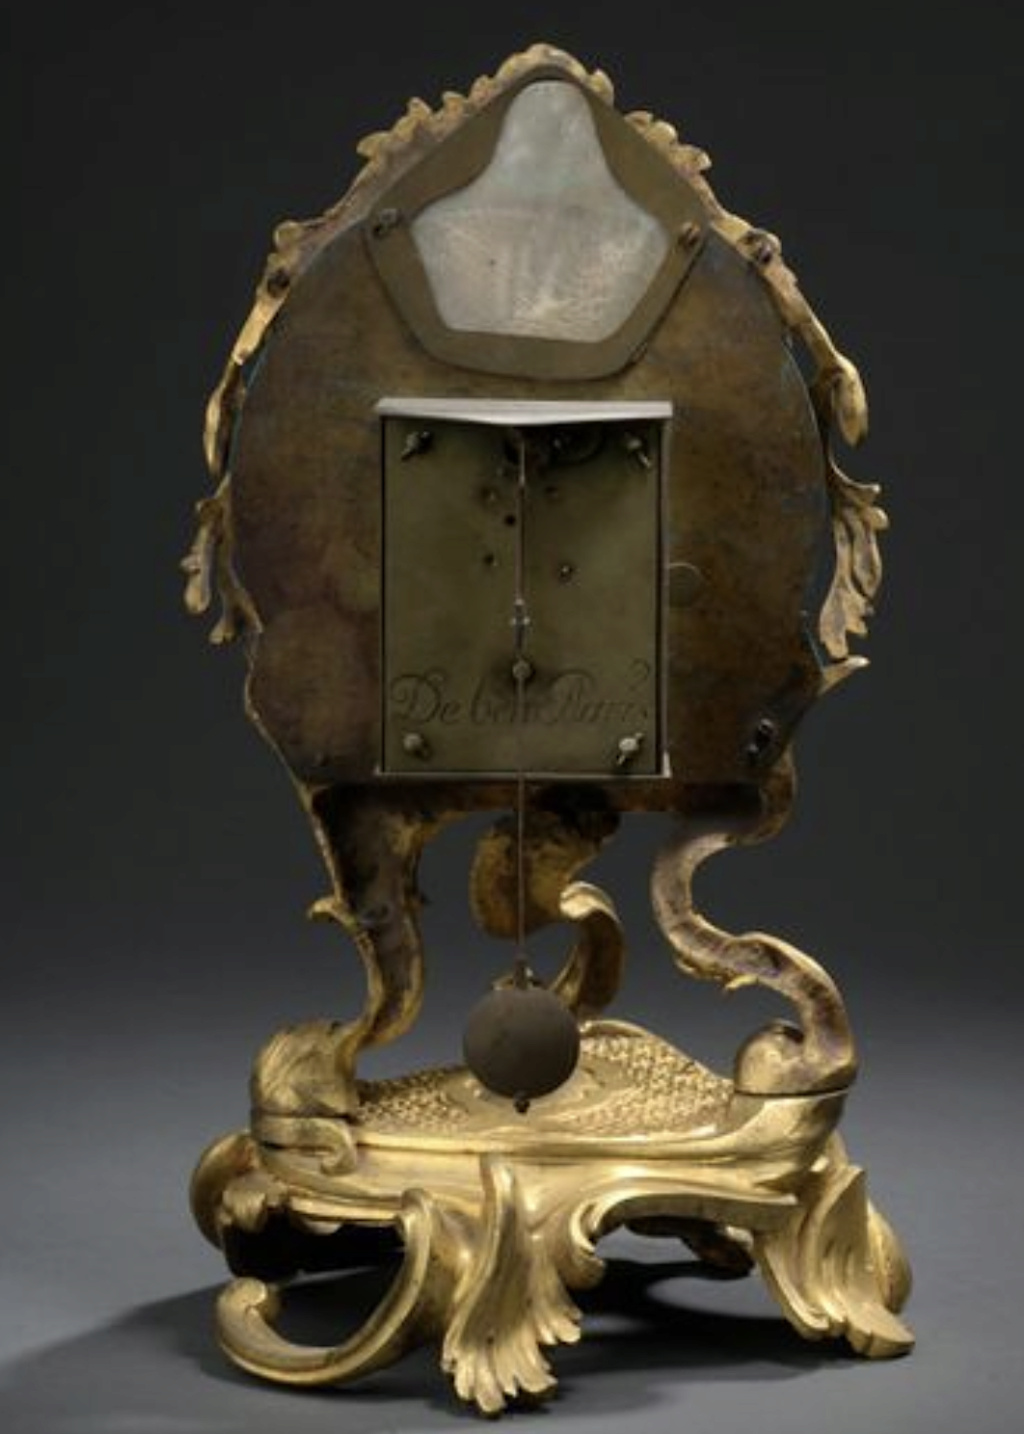 Horloges et pendules du XVIIIe siècle - Page 4 Capt3718